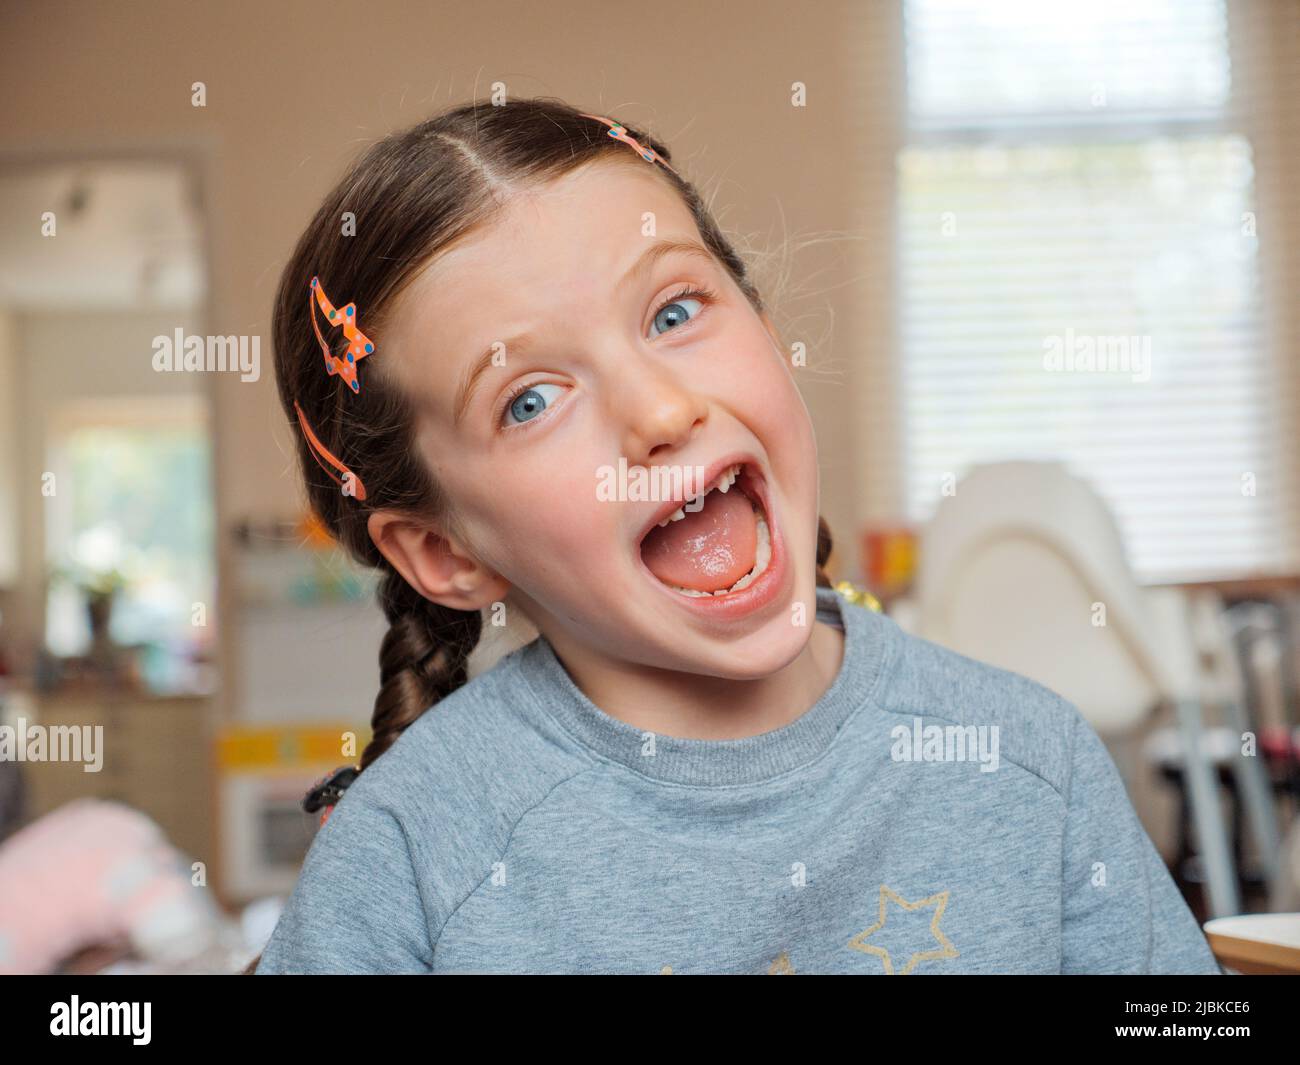 Portrait d'une jeune fille de sept ans souriante qui a perdu ses dents de bébé avant qui sont tombées Banque D'Images